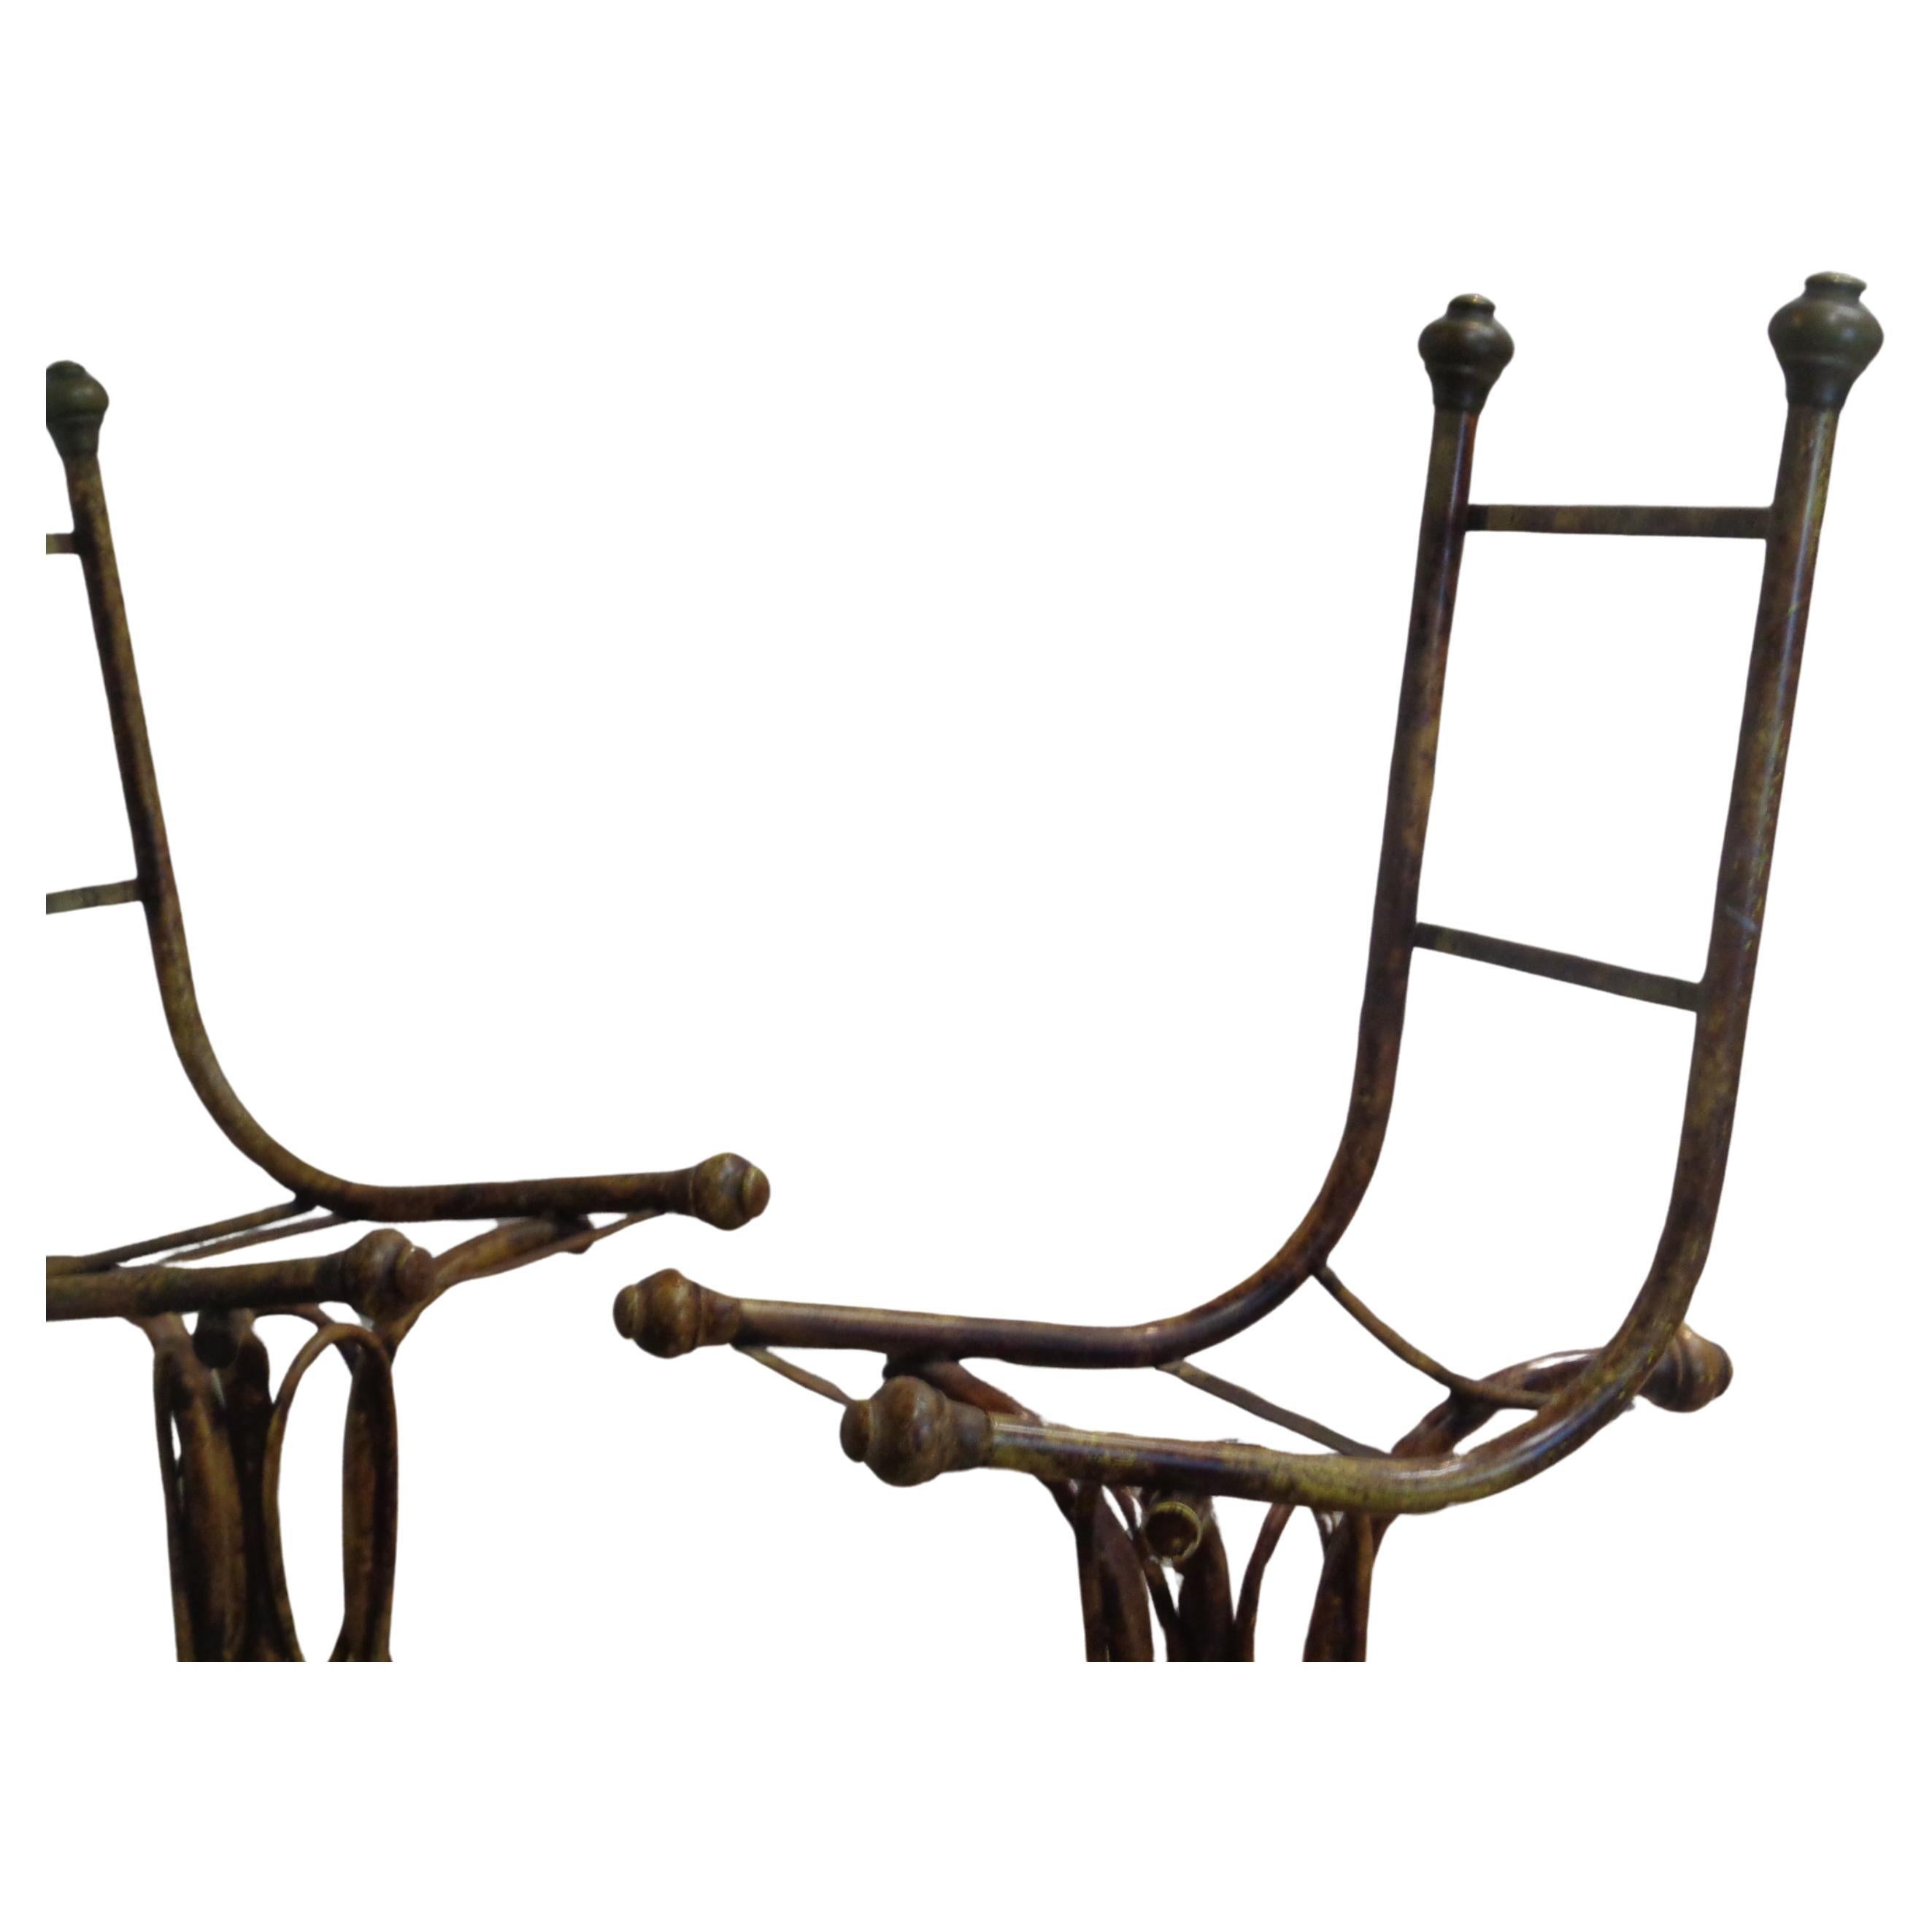 Paire de chaises en fer, en faux bambou, en finition d'usine peinte à la tortue / chapeaux en laiton bronze aux deux poteaux supérieurs et aux trois extrémités inférieures / deux grands chapeaux en bois peints à la tortue à l'avant des sièges en fer